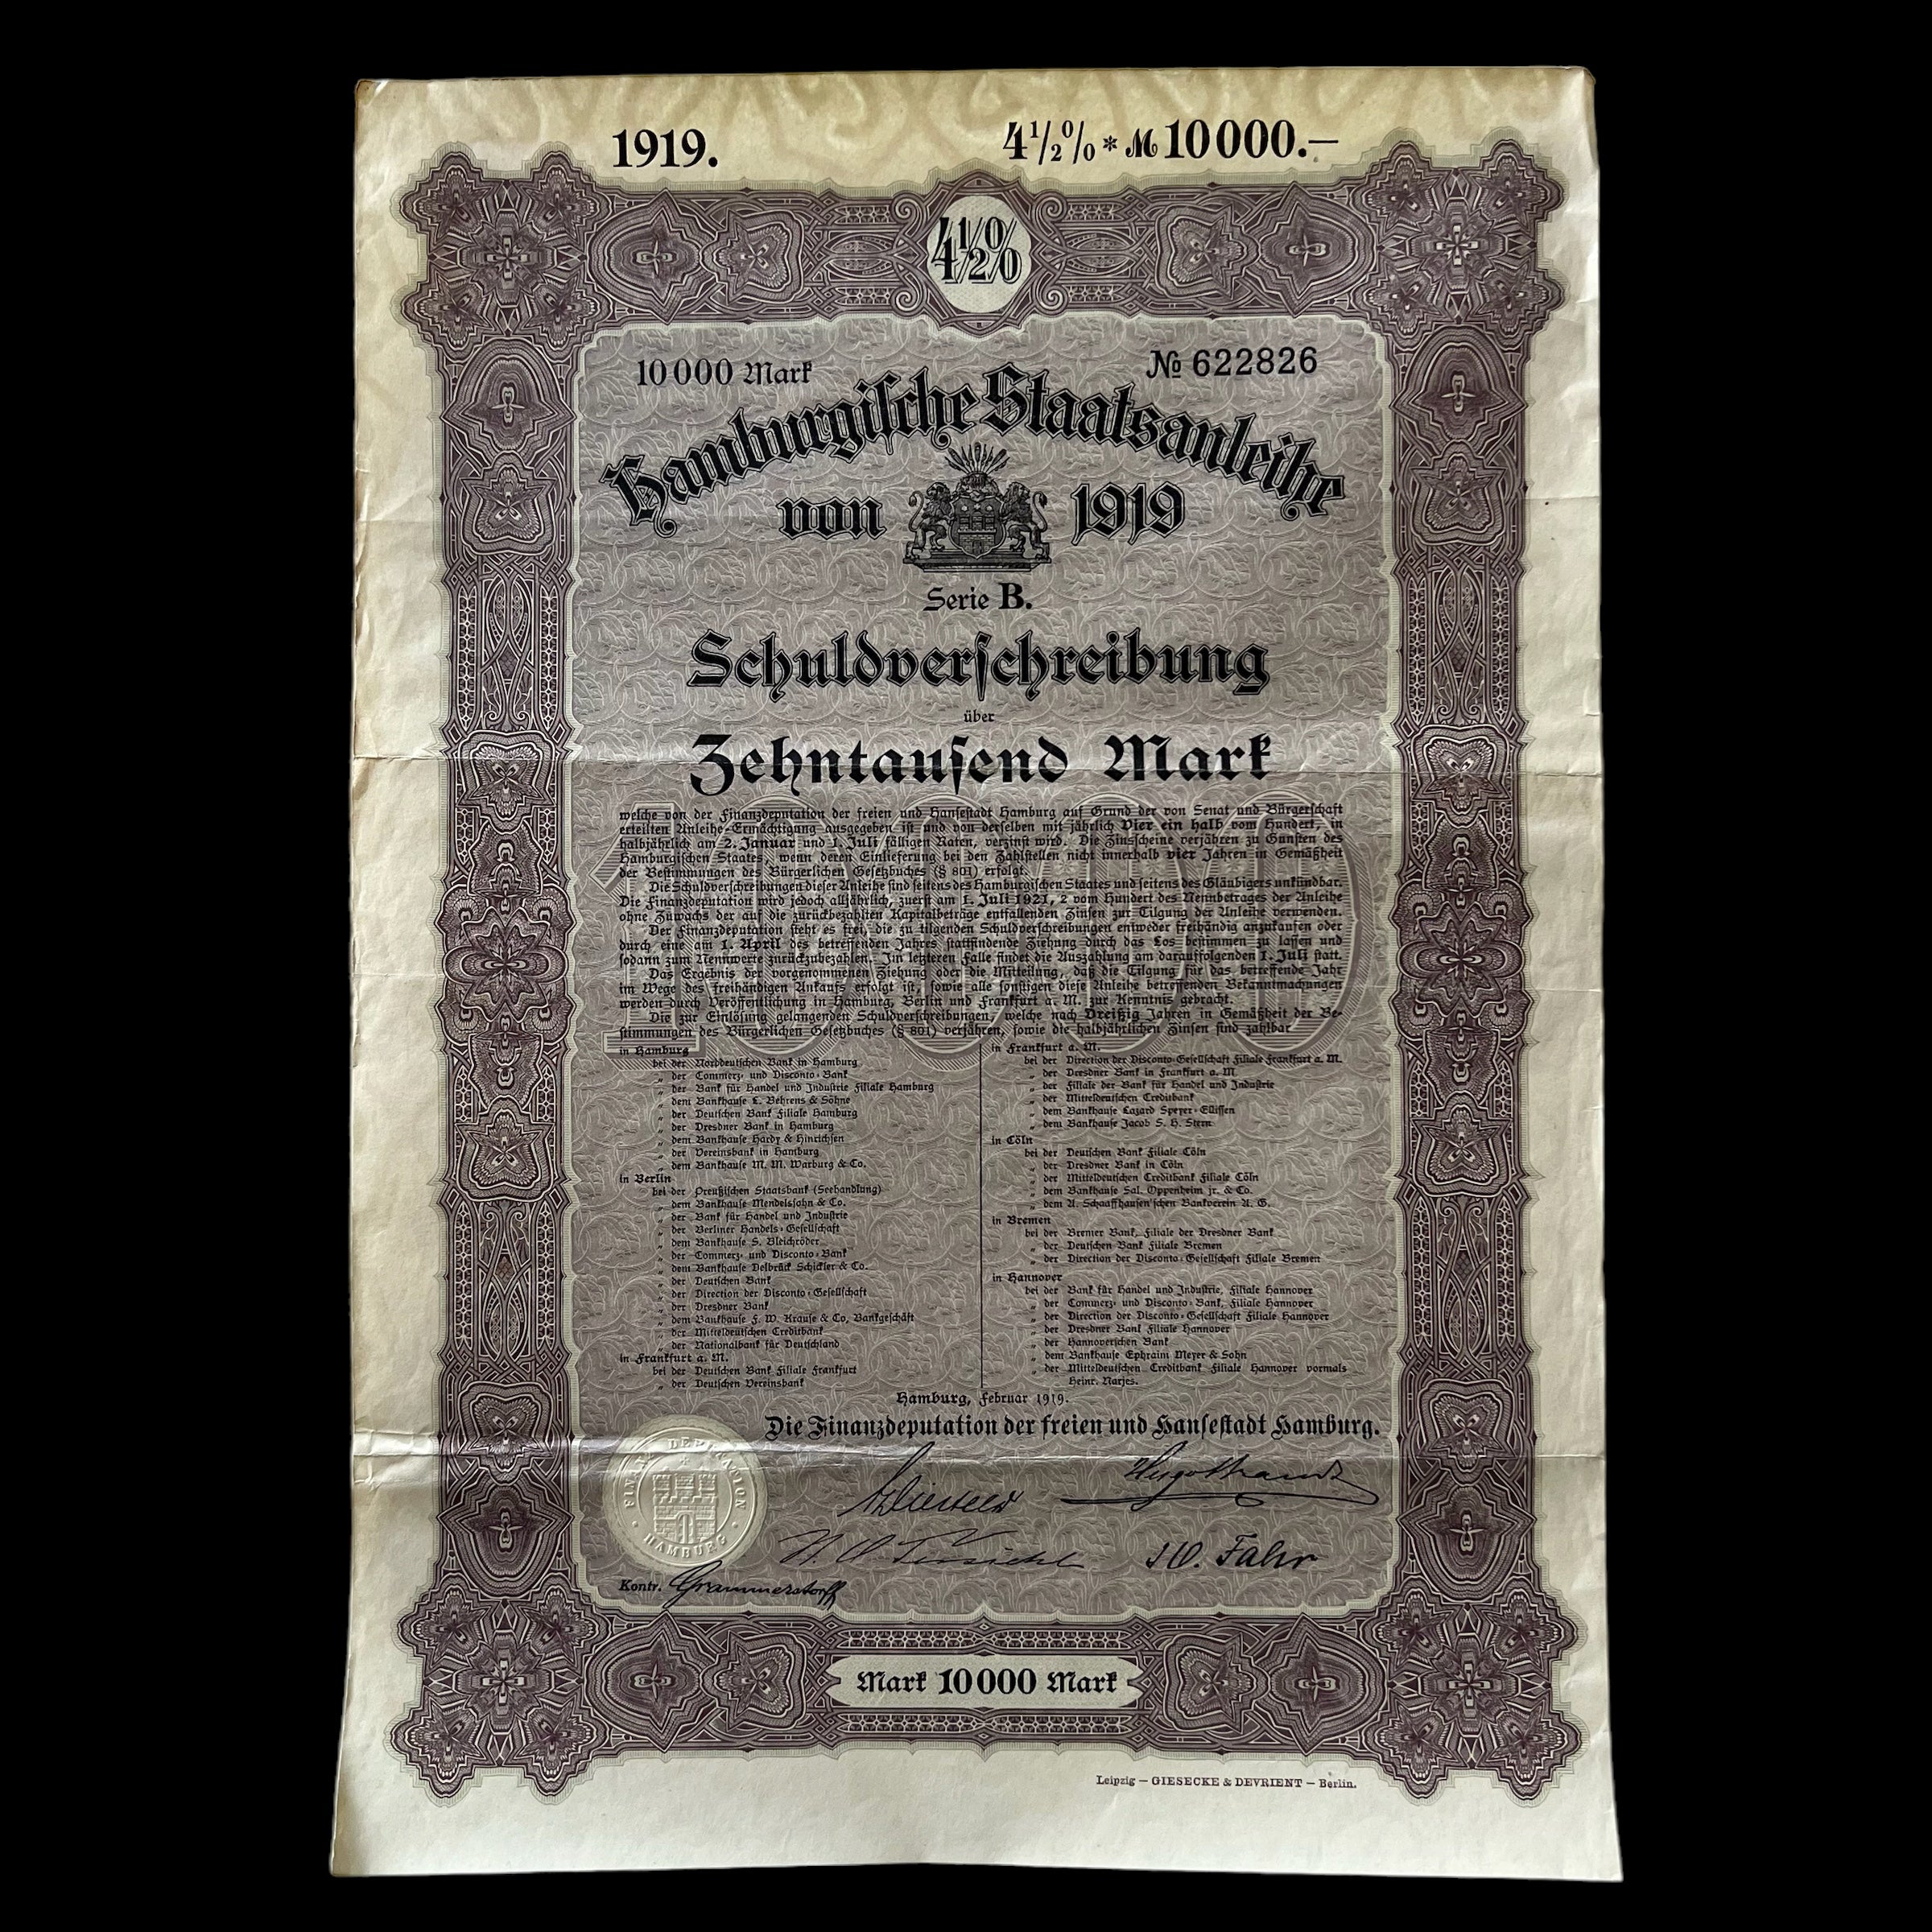 1919 Hamburgifche Staatsanleihe 10000 Mark Bond